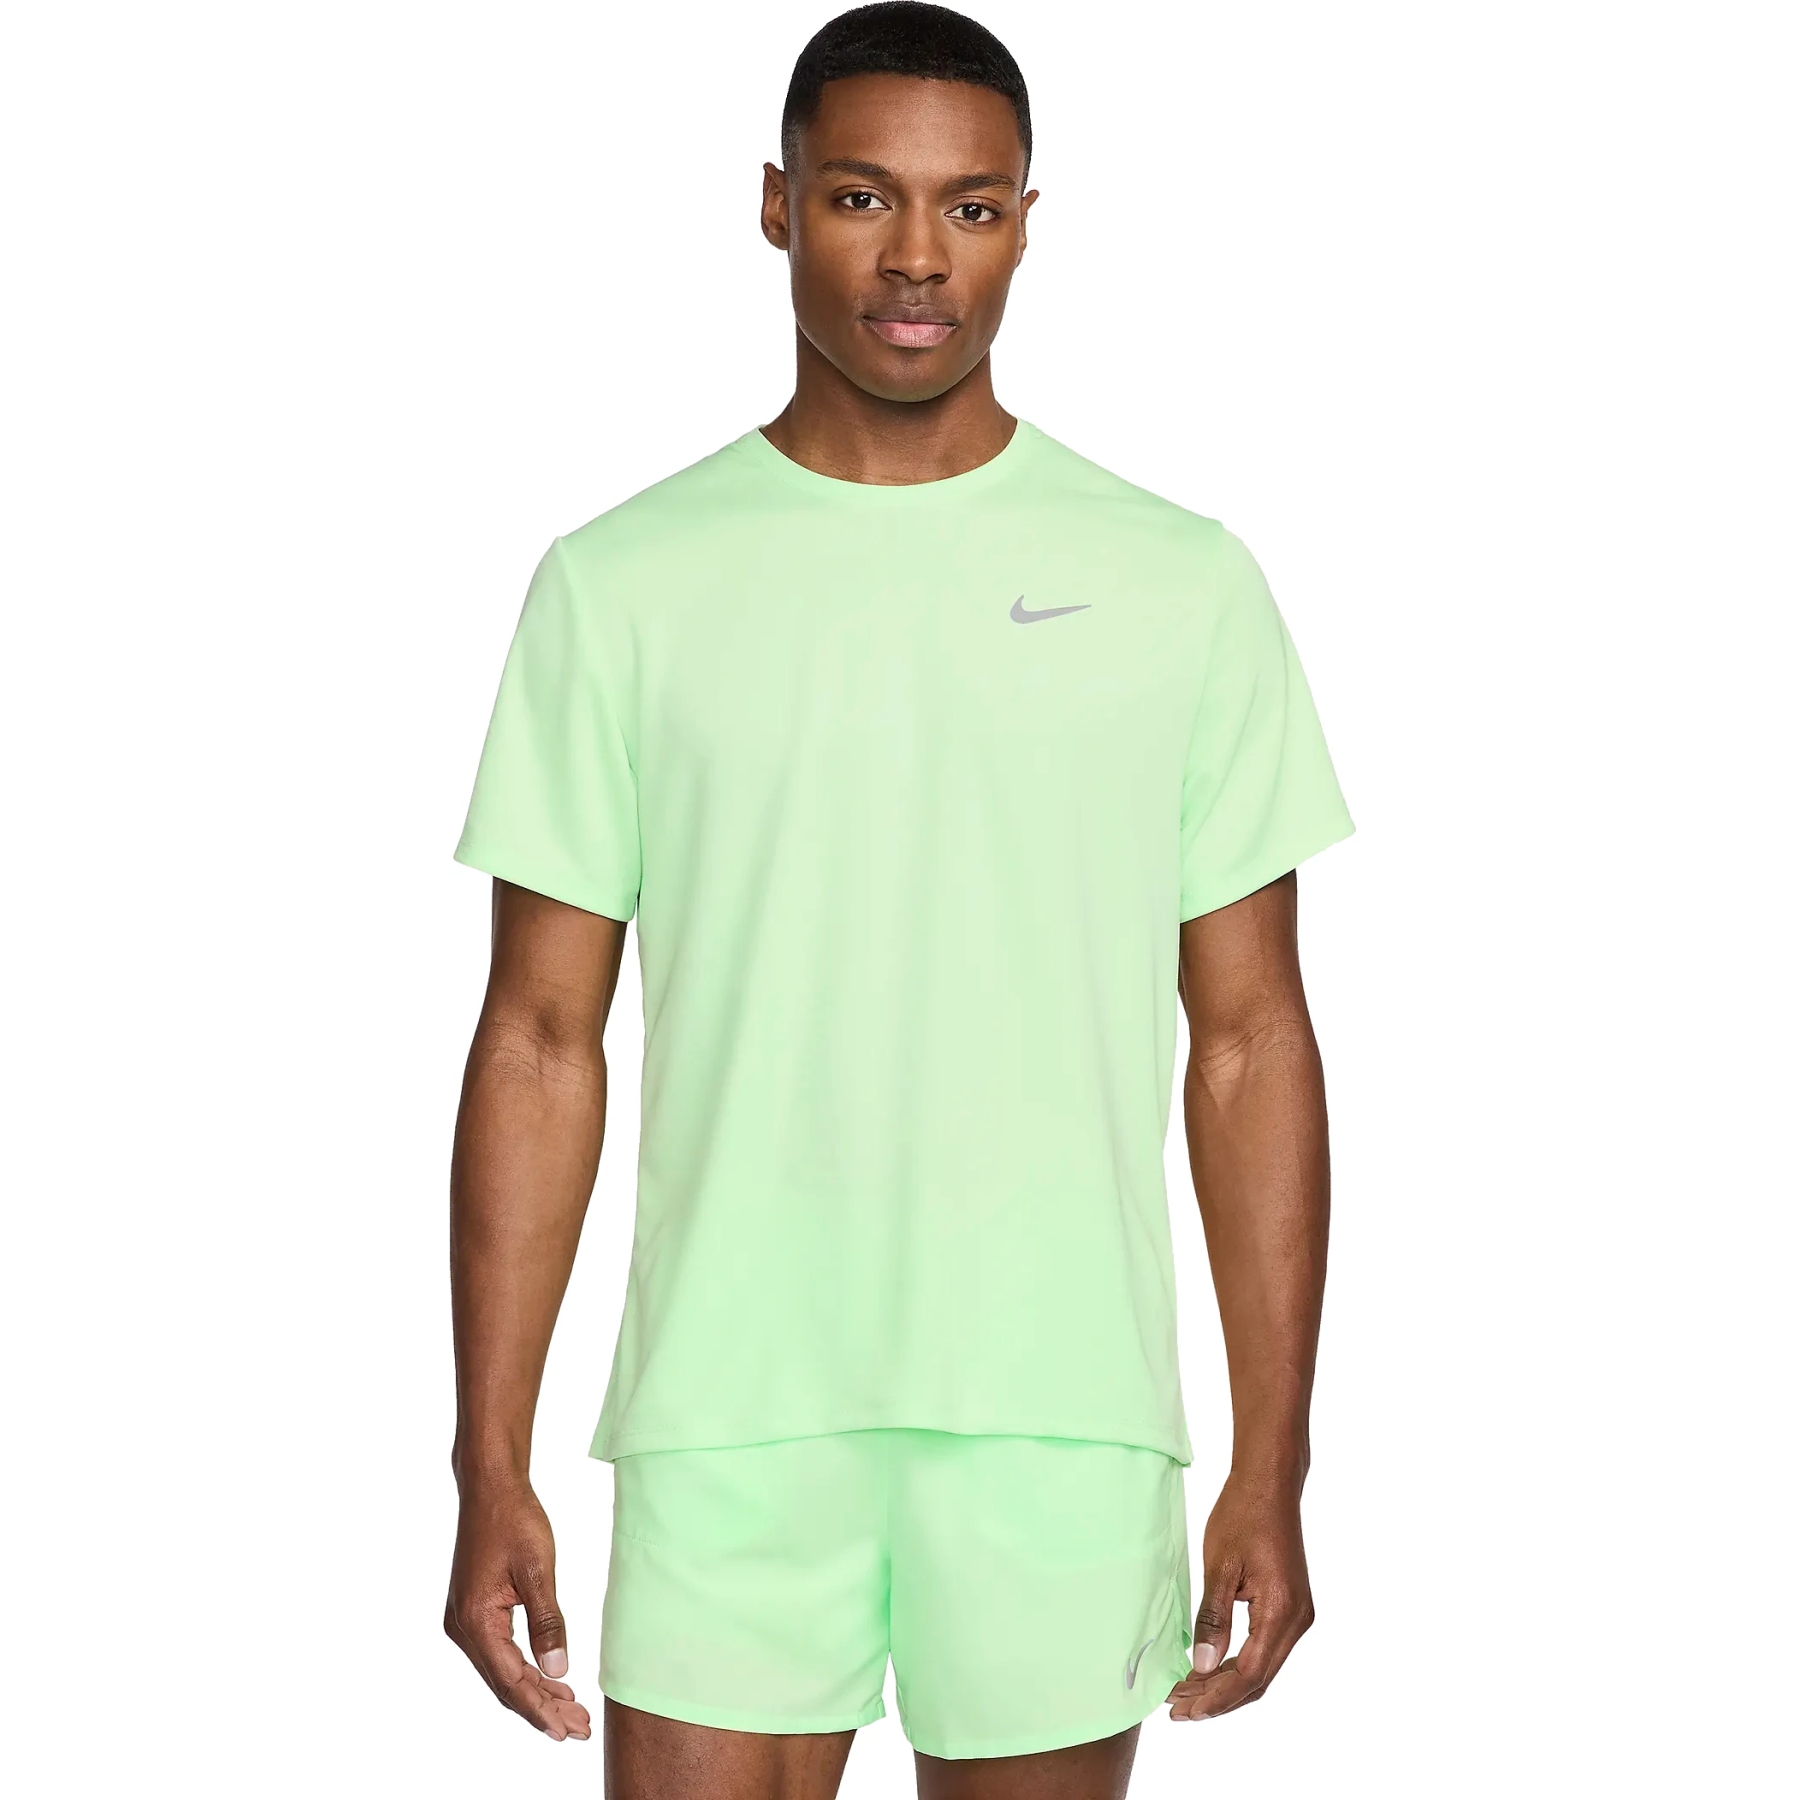 Produktbild von Nike Dri-FIT UV Miler Laufshirt Herren - vapor green/reflective silver DV9315-376